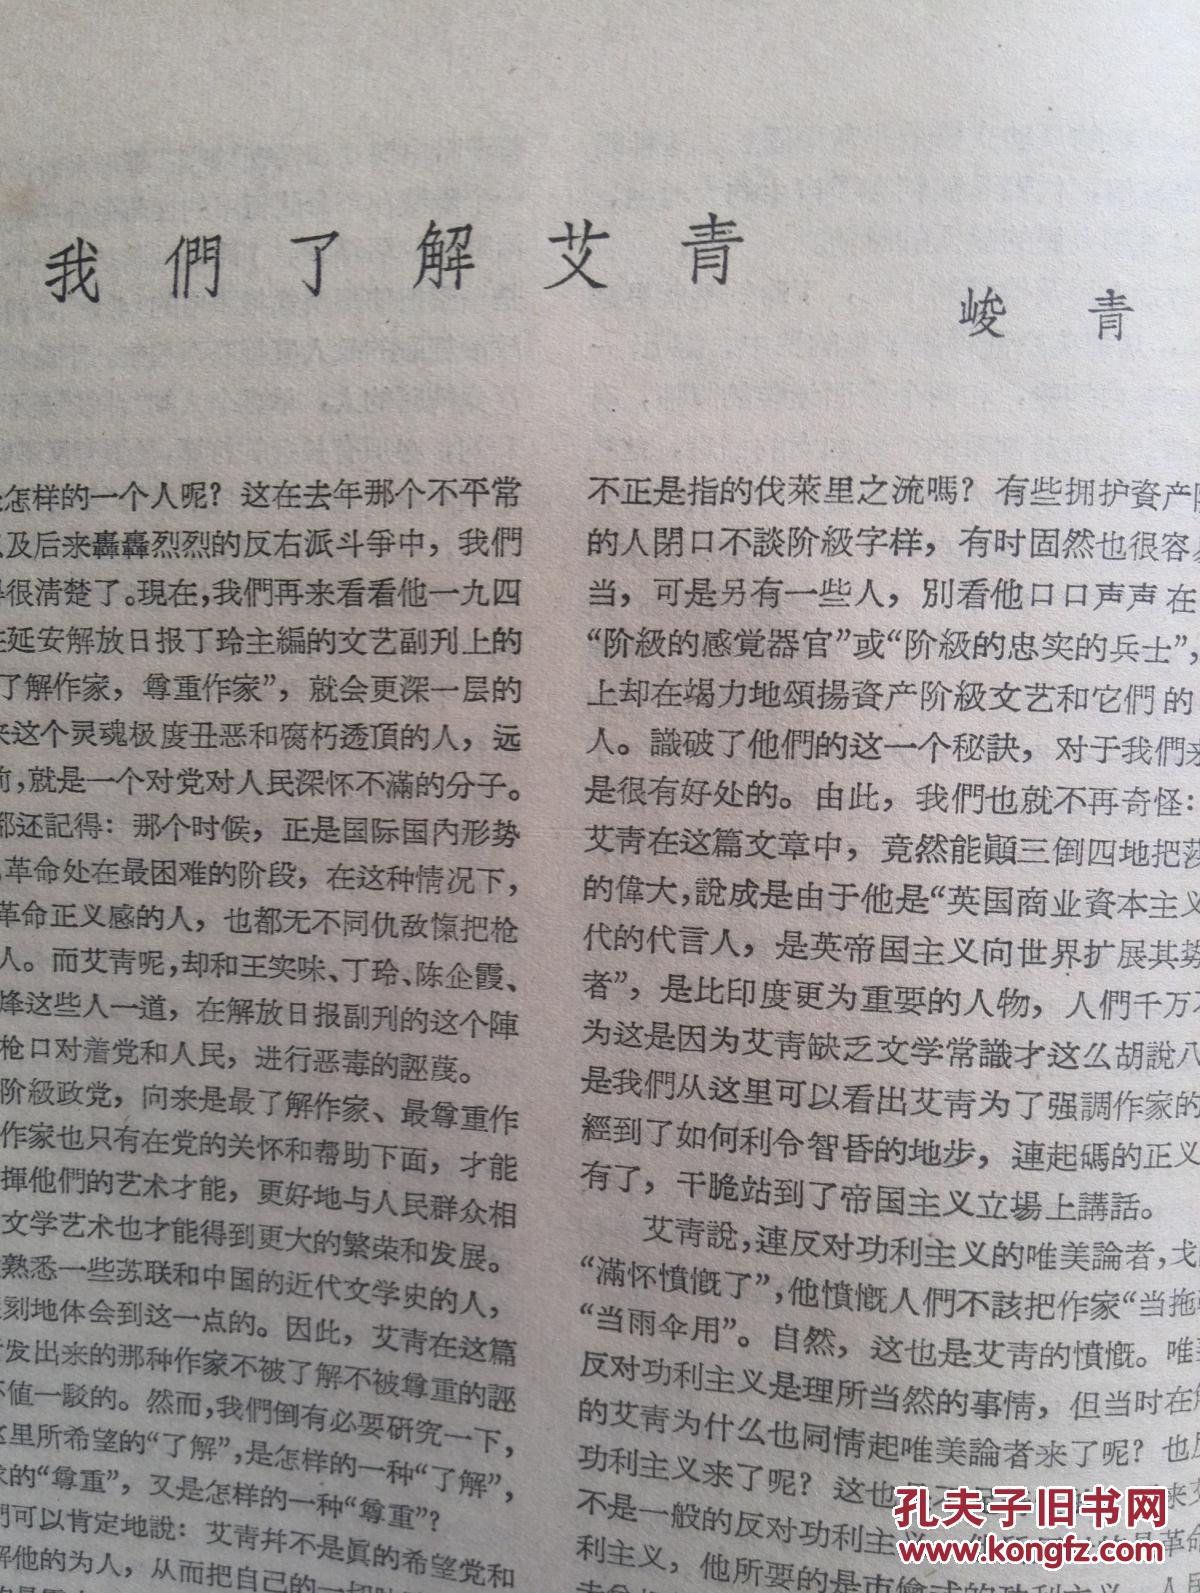 文艺月报(反右)批判艾青冯雪峰王实味丁玲钱谷